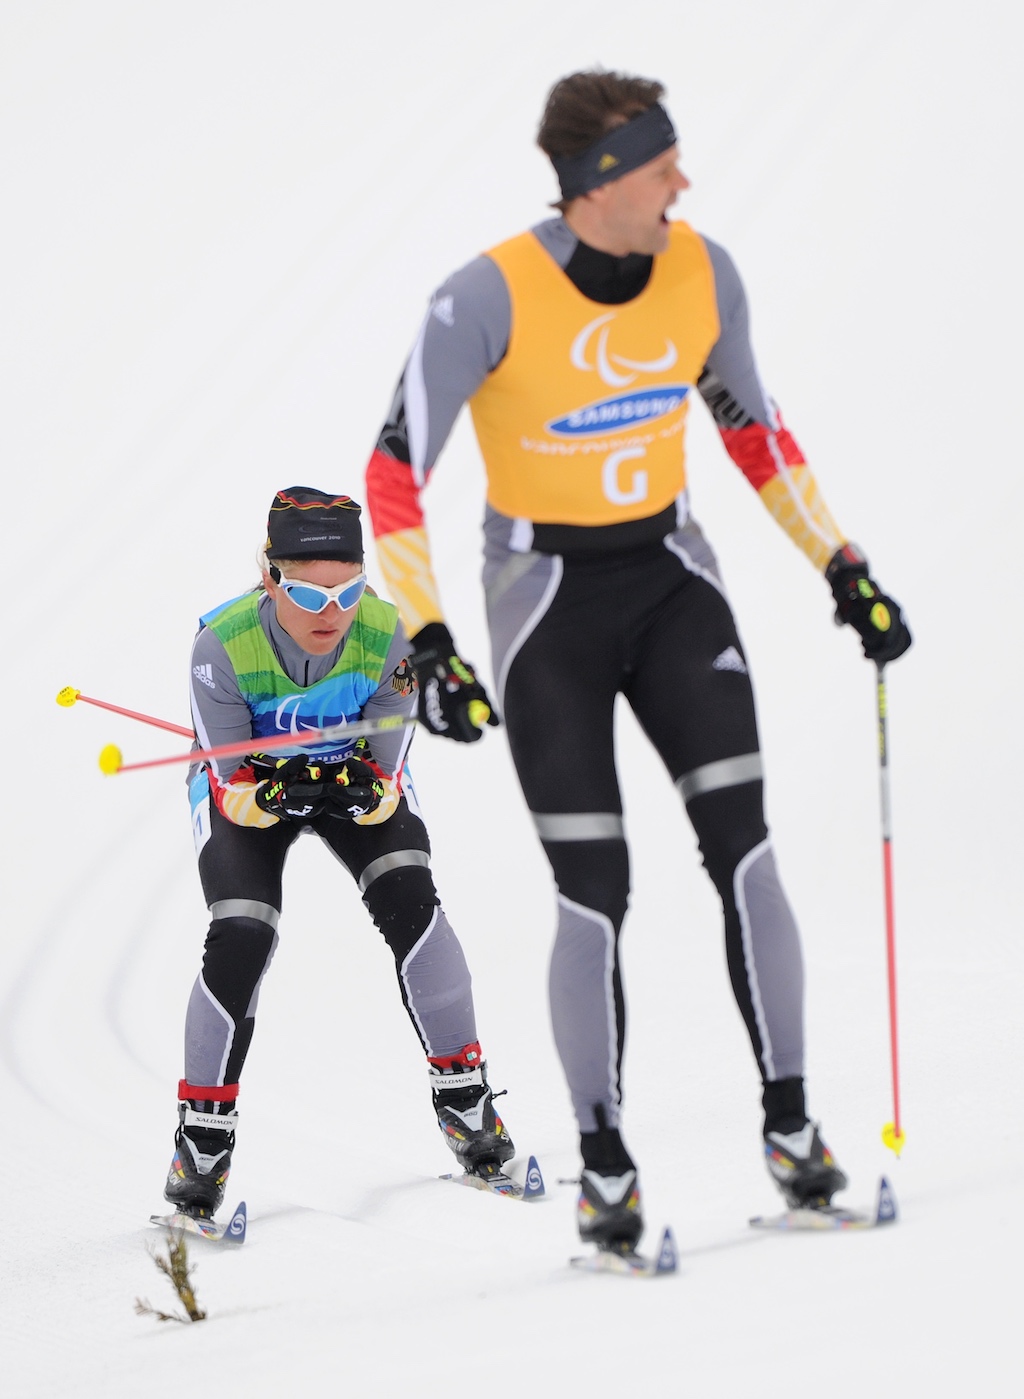 Verena Bentele und ihr Begleitläufer Thomas Friedrich bei den Paralympics 2010 in Vancouver